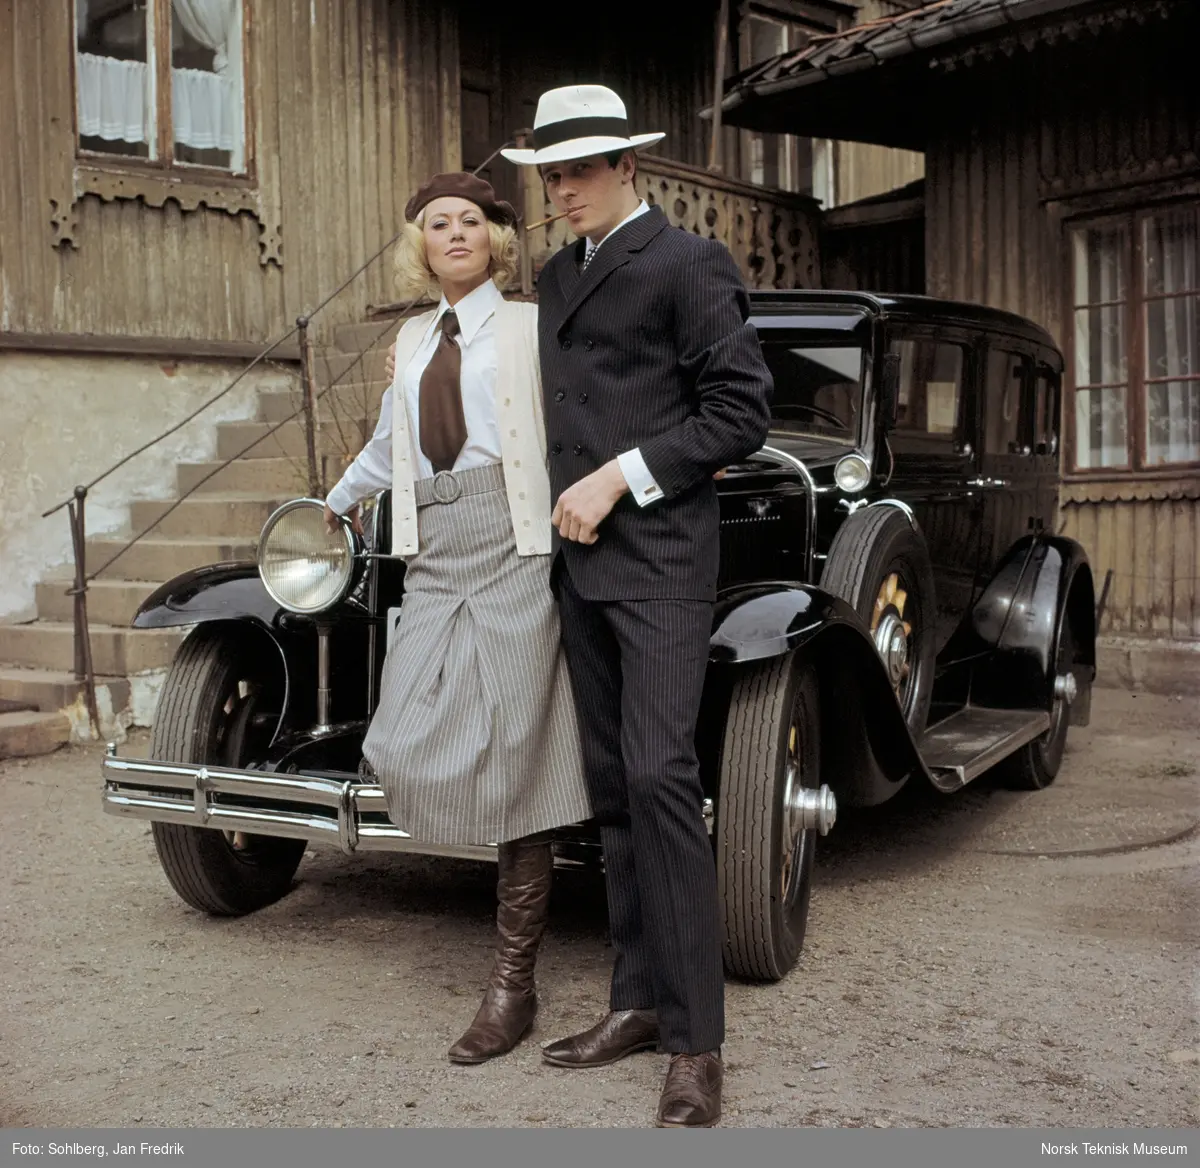 En kvinnelig og en mannlig modell viser høstmote. Fra en serie fotografier publisert i Det Nye 26.6.1968 til motereportasjen "Bonnie & Clyde".